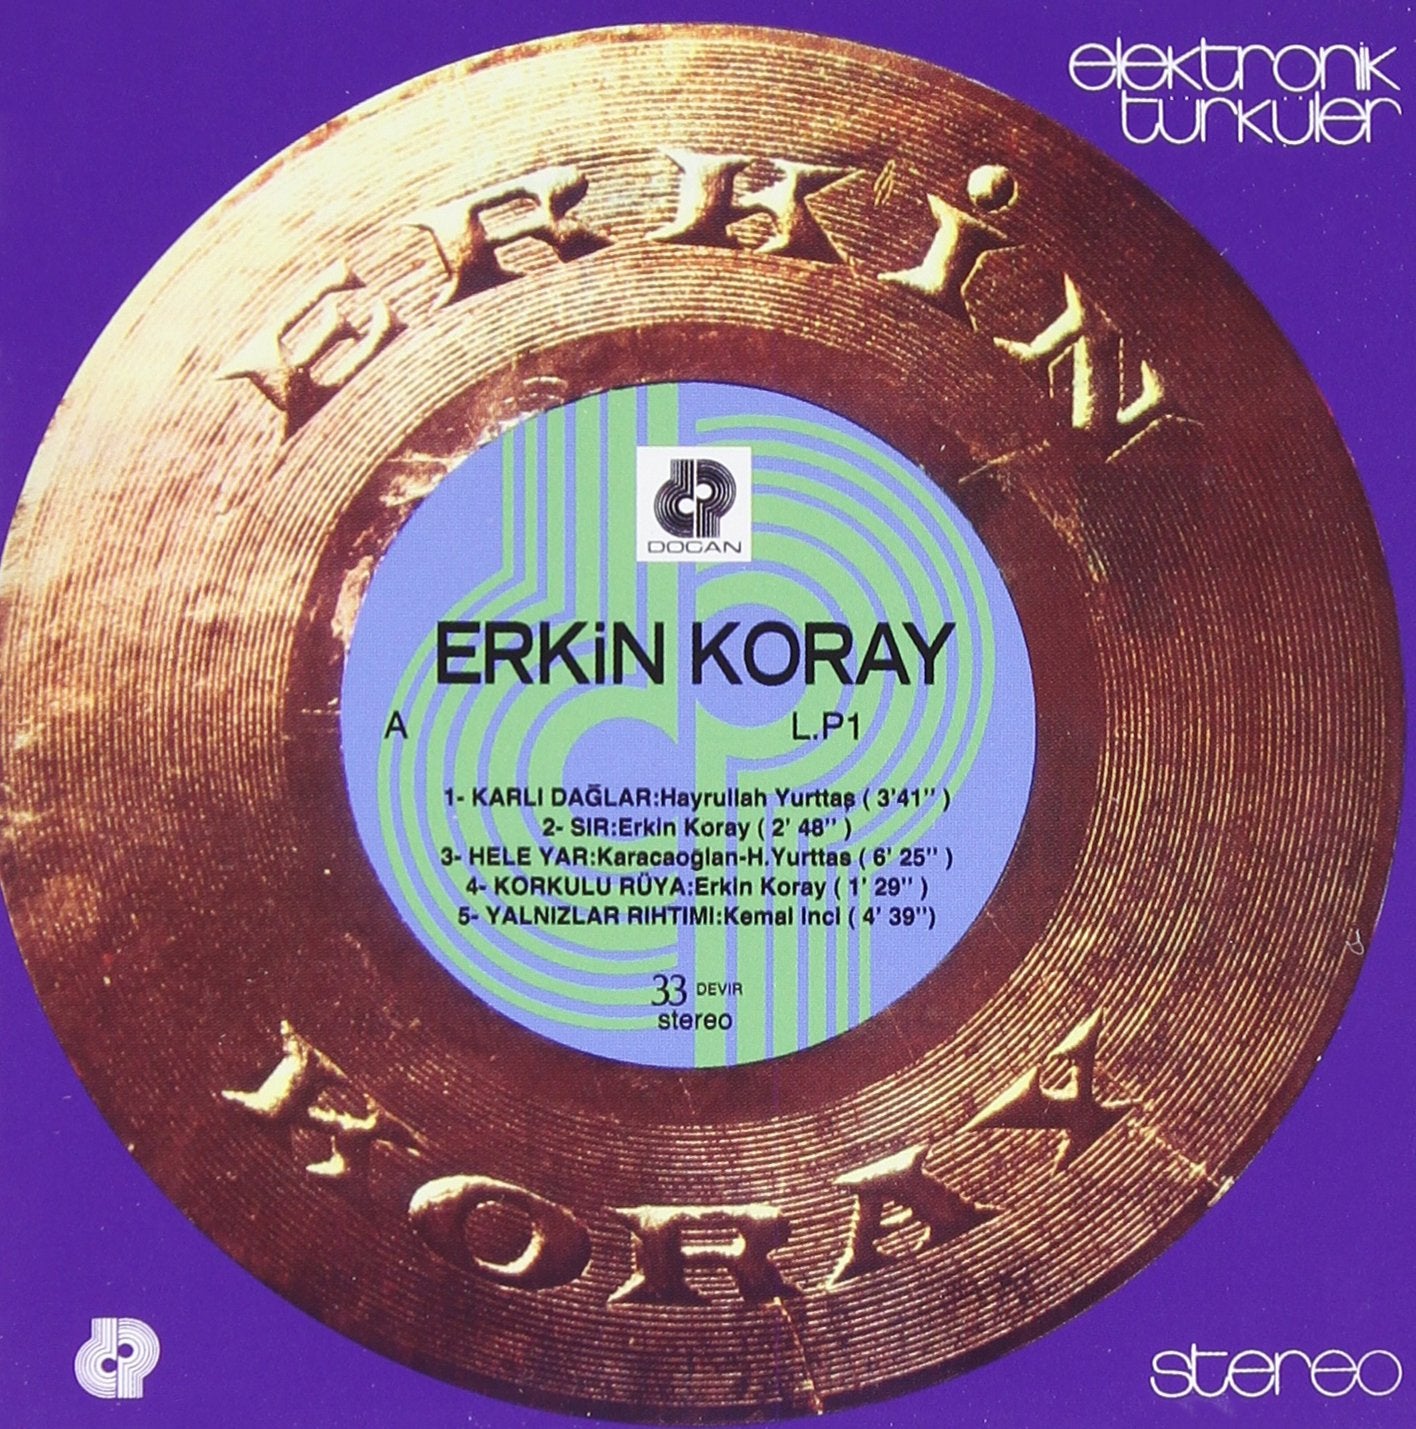 Erkin Koray - Elektronik Türküler - LP